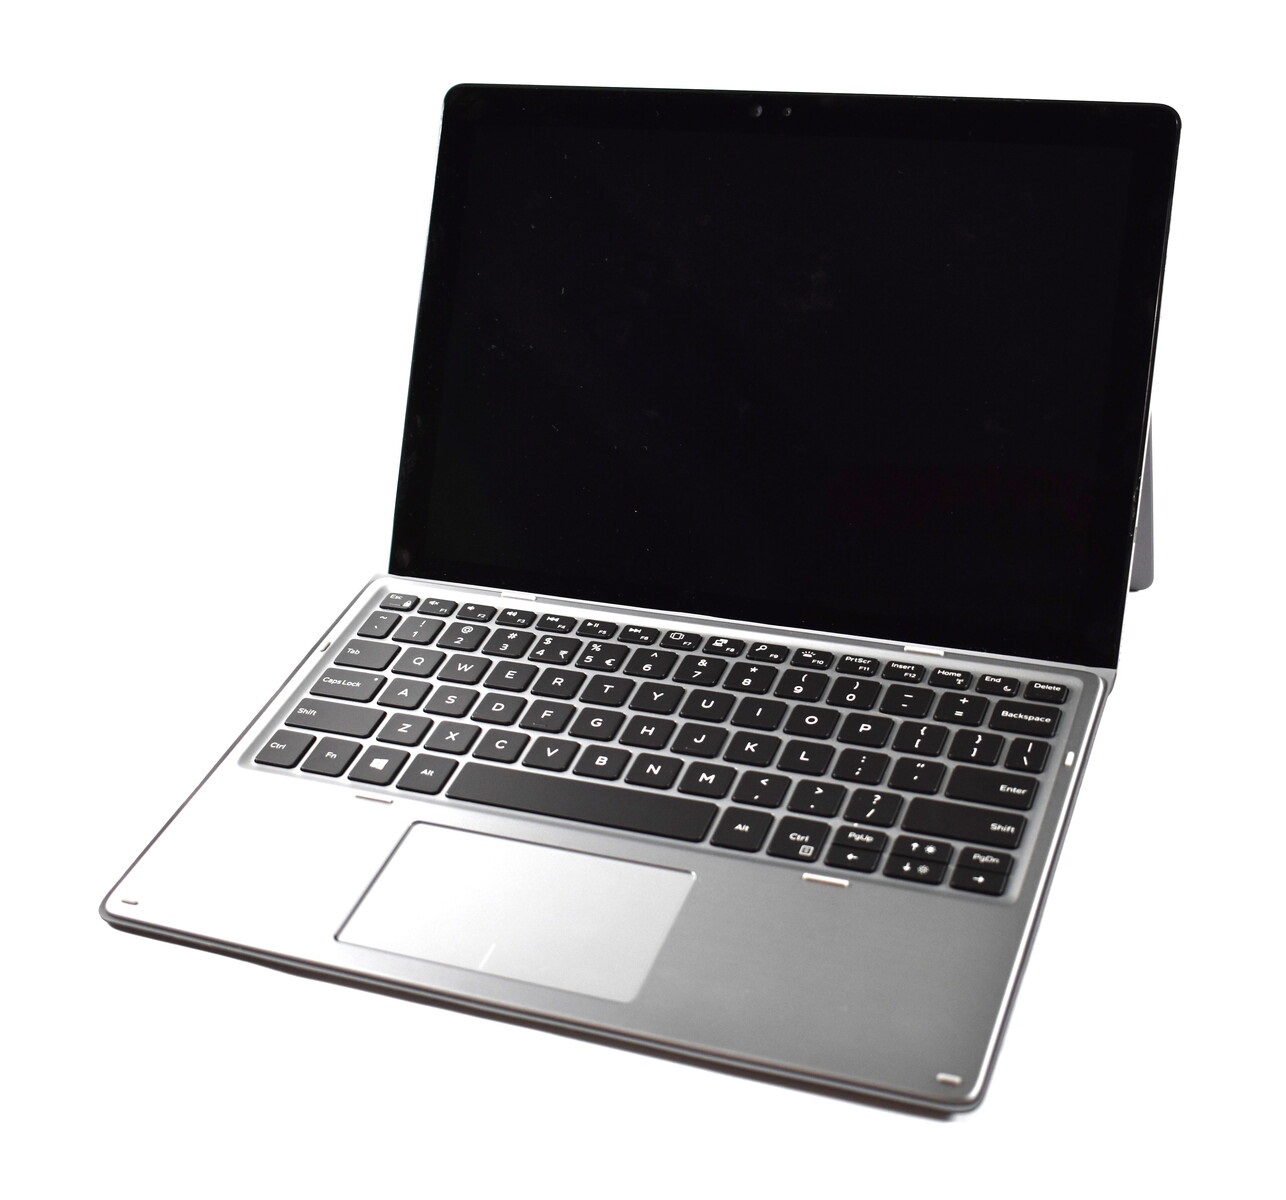 Đánh giá Dell Latitude 7200 2 trong 1: Chiếc laptop tạo ấn tượng tốt, Chuyên trang tư vấn laptop